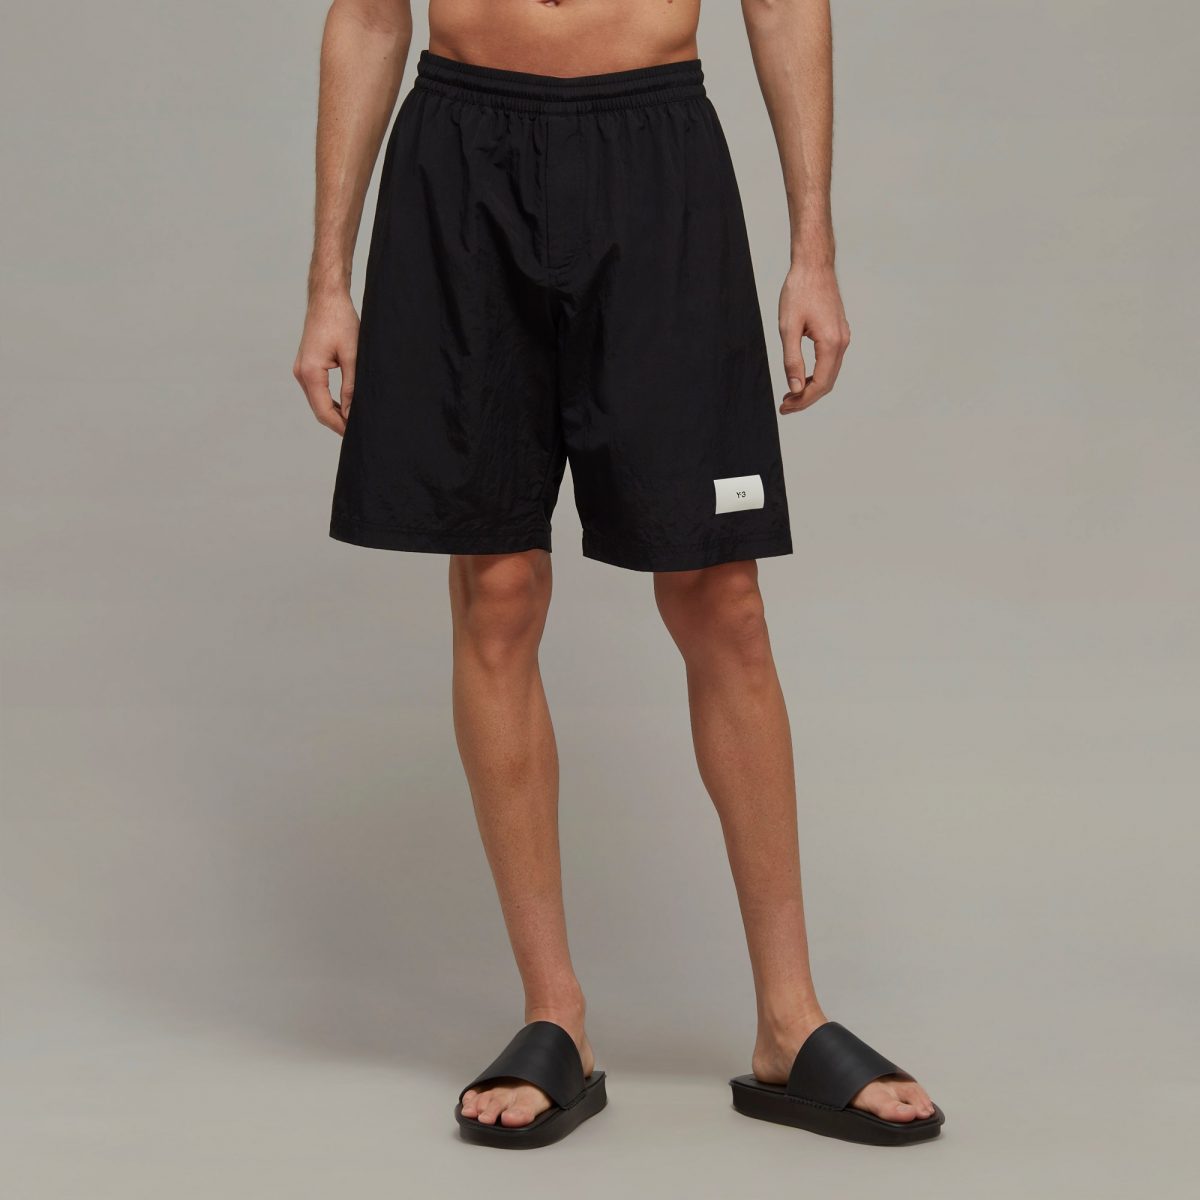 Мужские шорты adidas MID-LENGTH SWIM SHORTS Черные фото